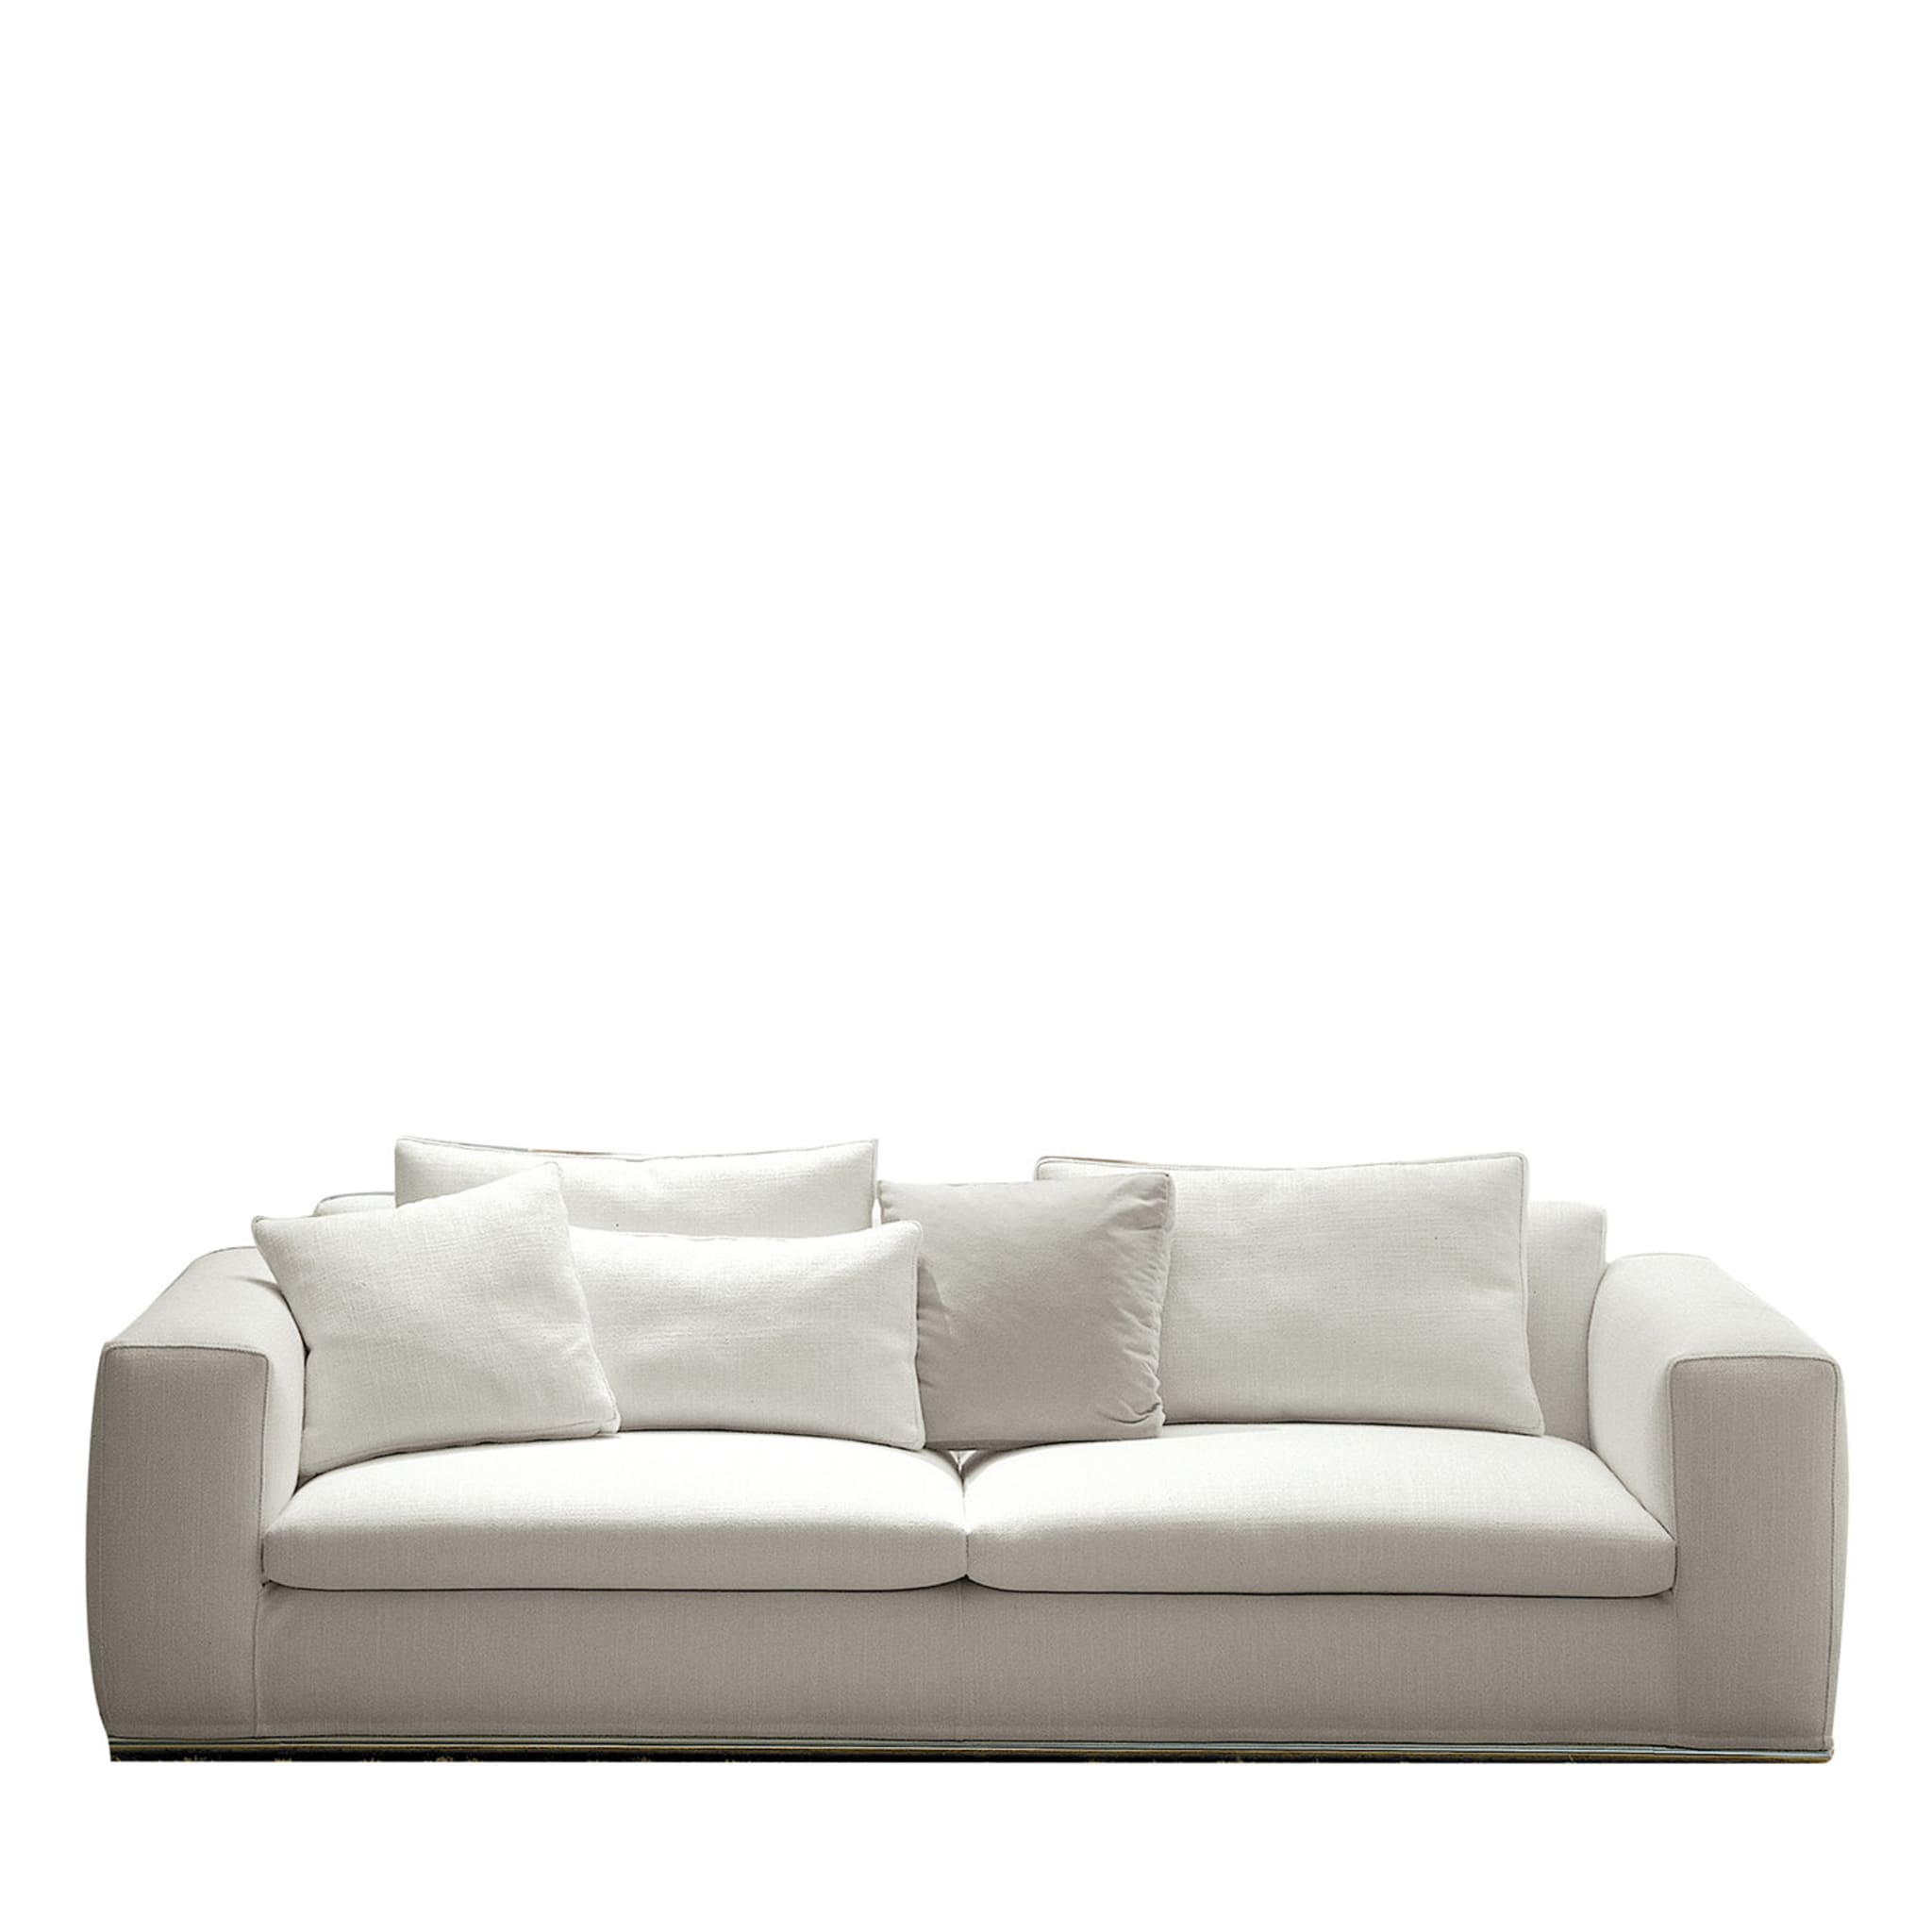 Canapé blanc moderne - Vue principale